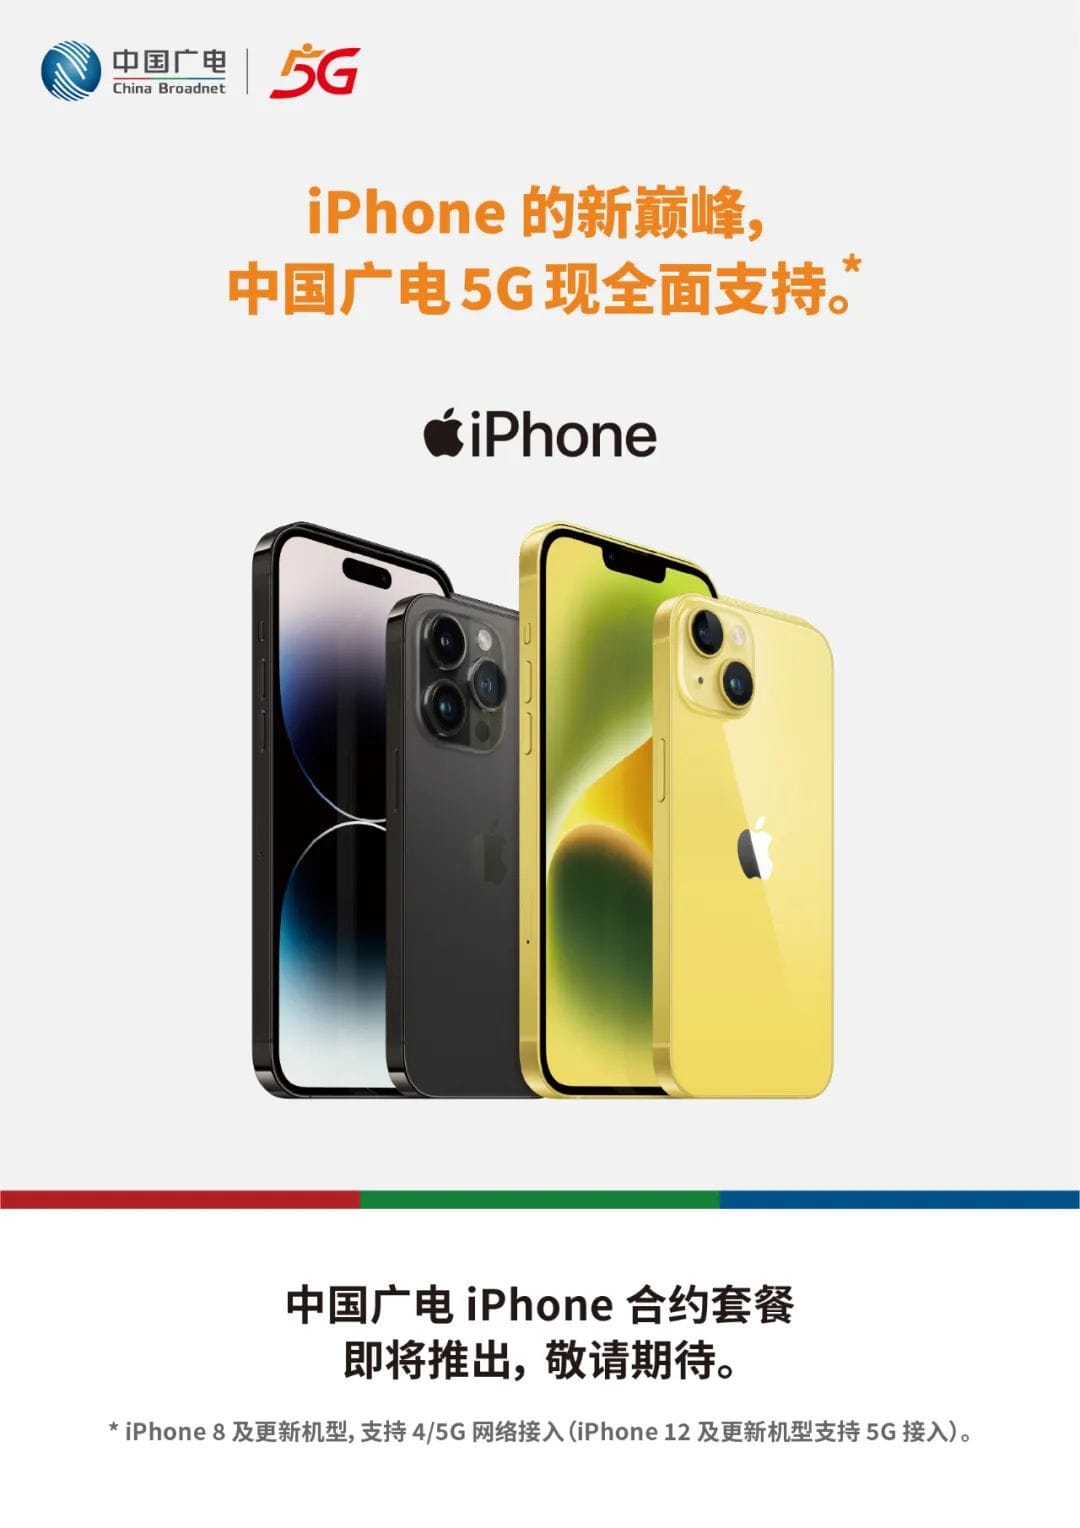 中国广电 5G 现支持苹果 iPhone 8 及更新机型，即将推出合约套餐